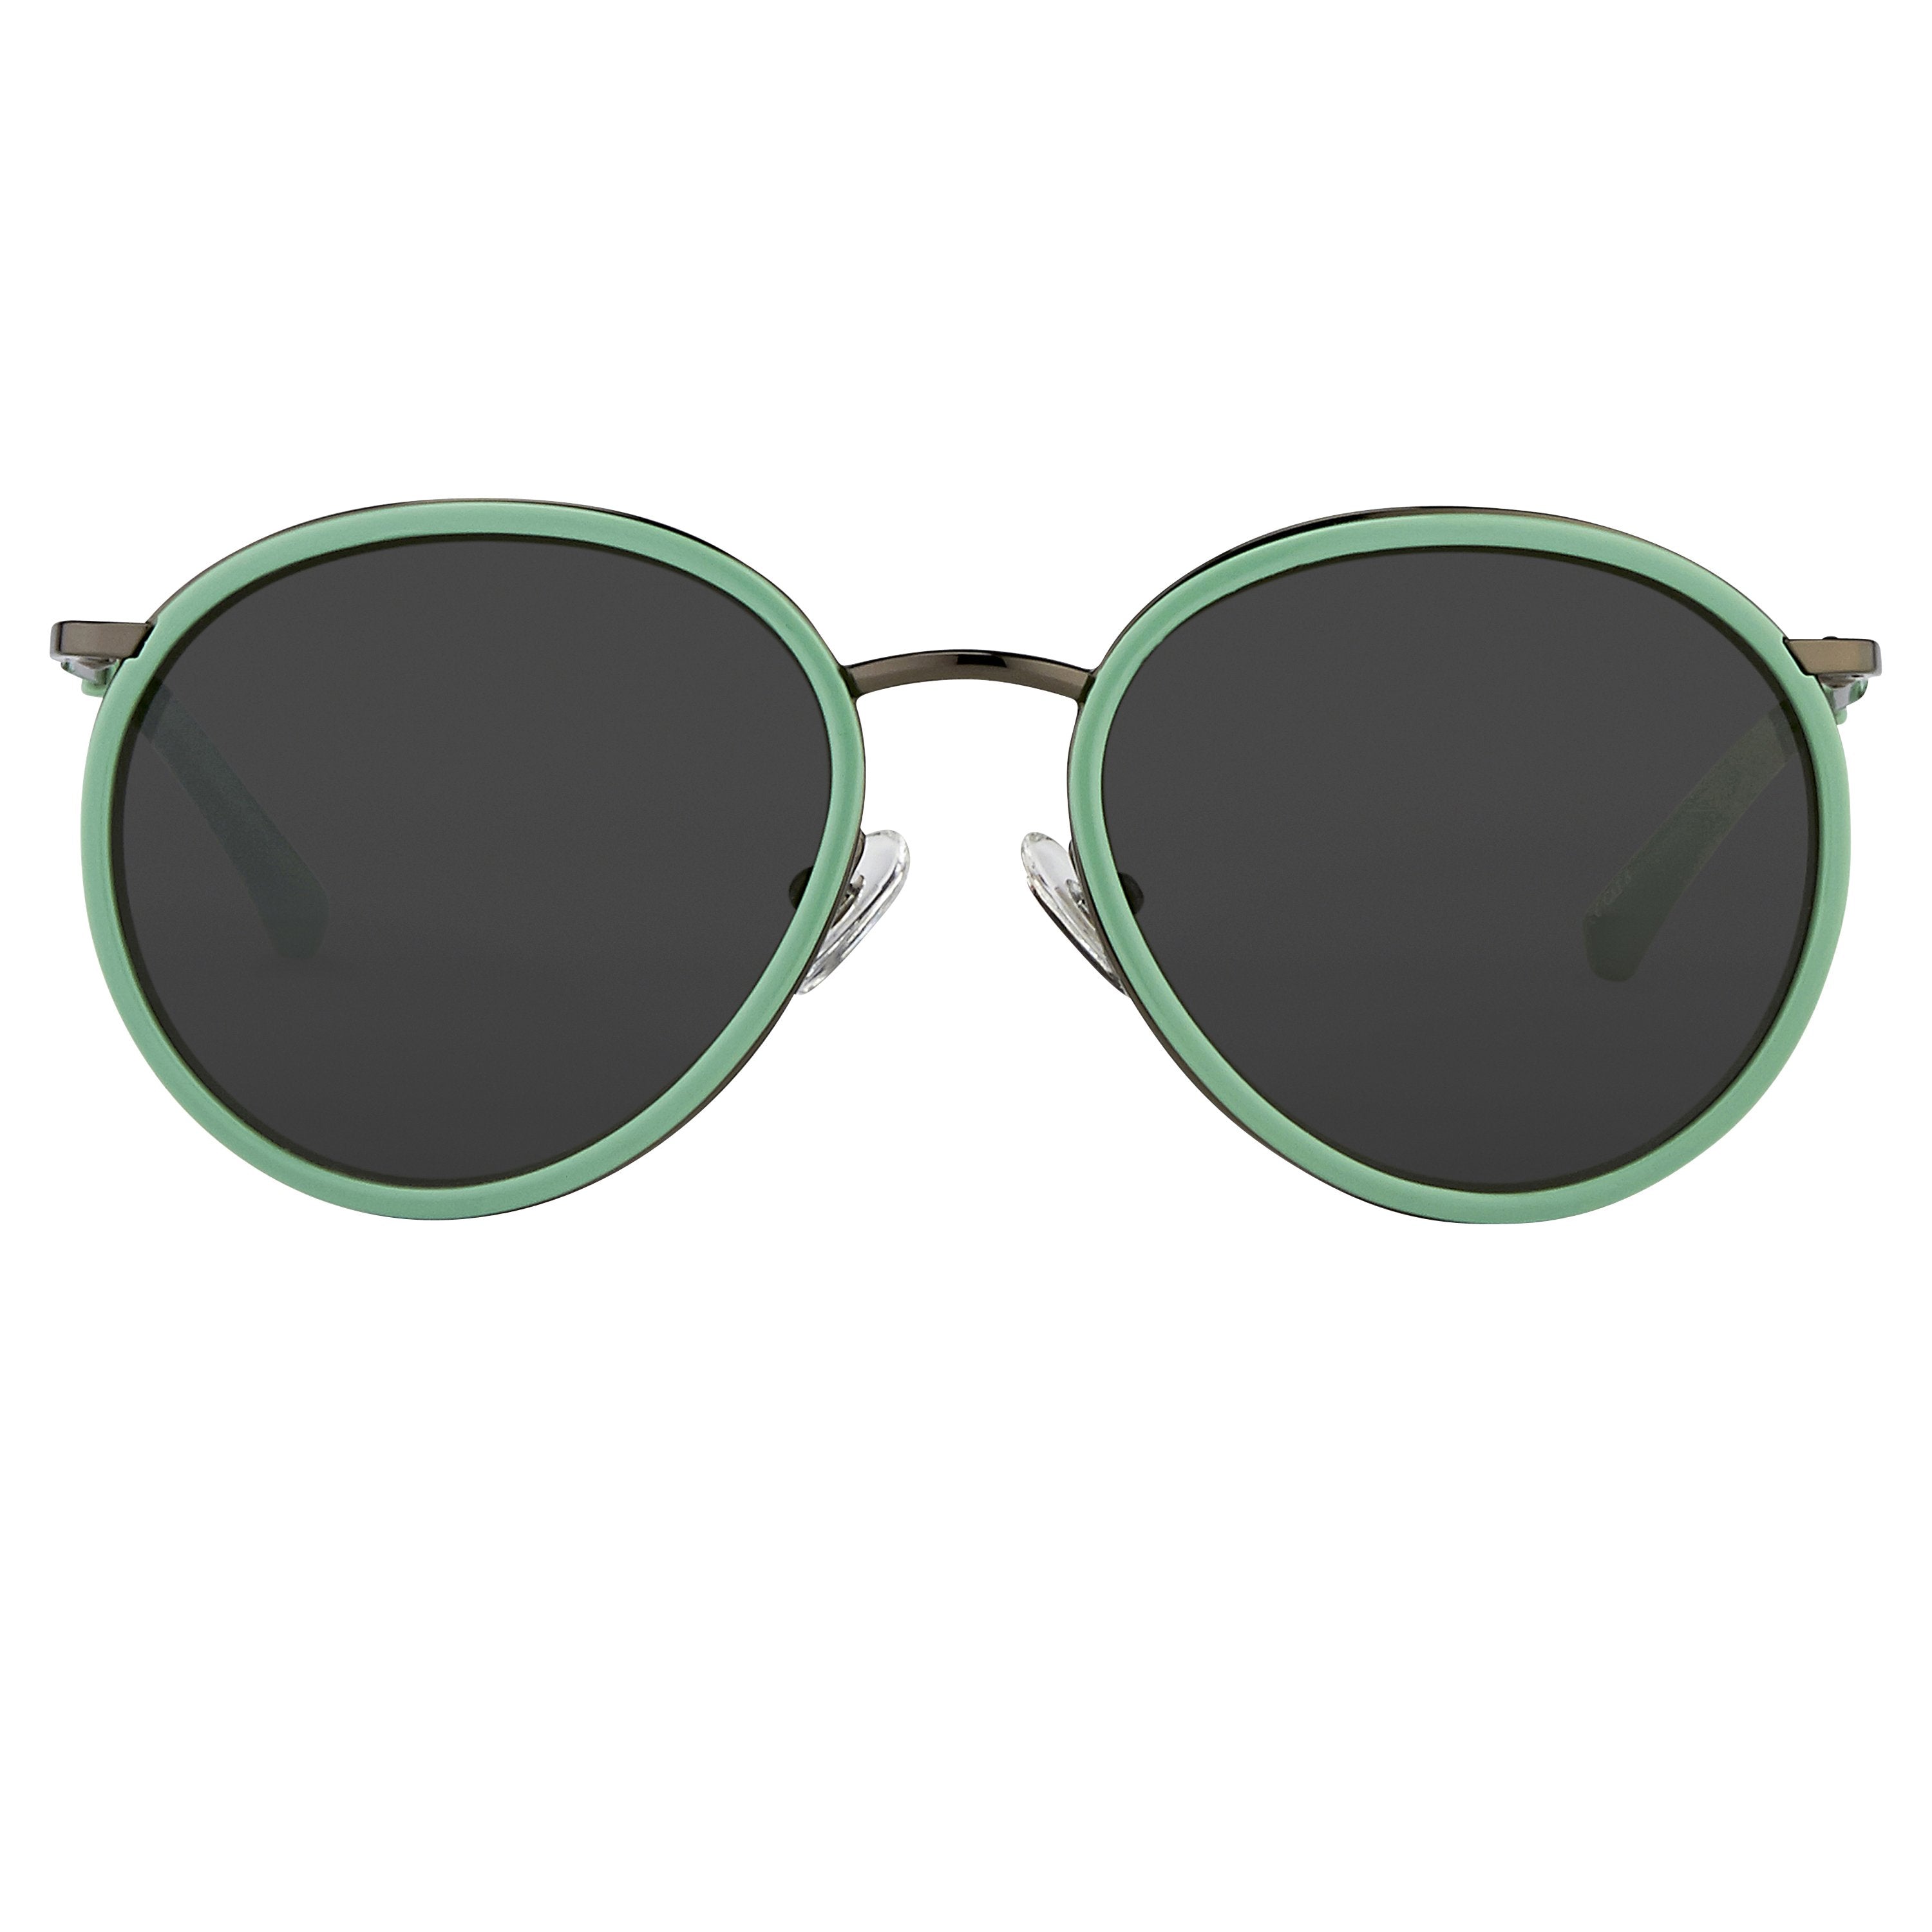 Color_DVN95C1SUN - Dries van Noten 95 C1 Oval Sunglasses